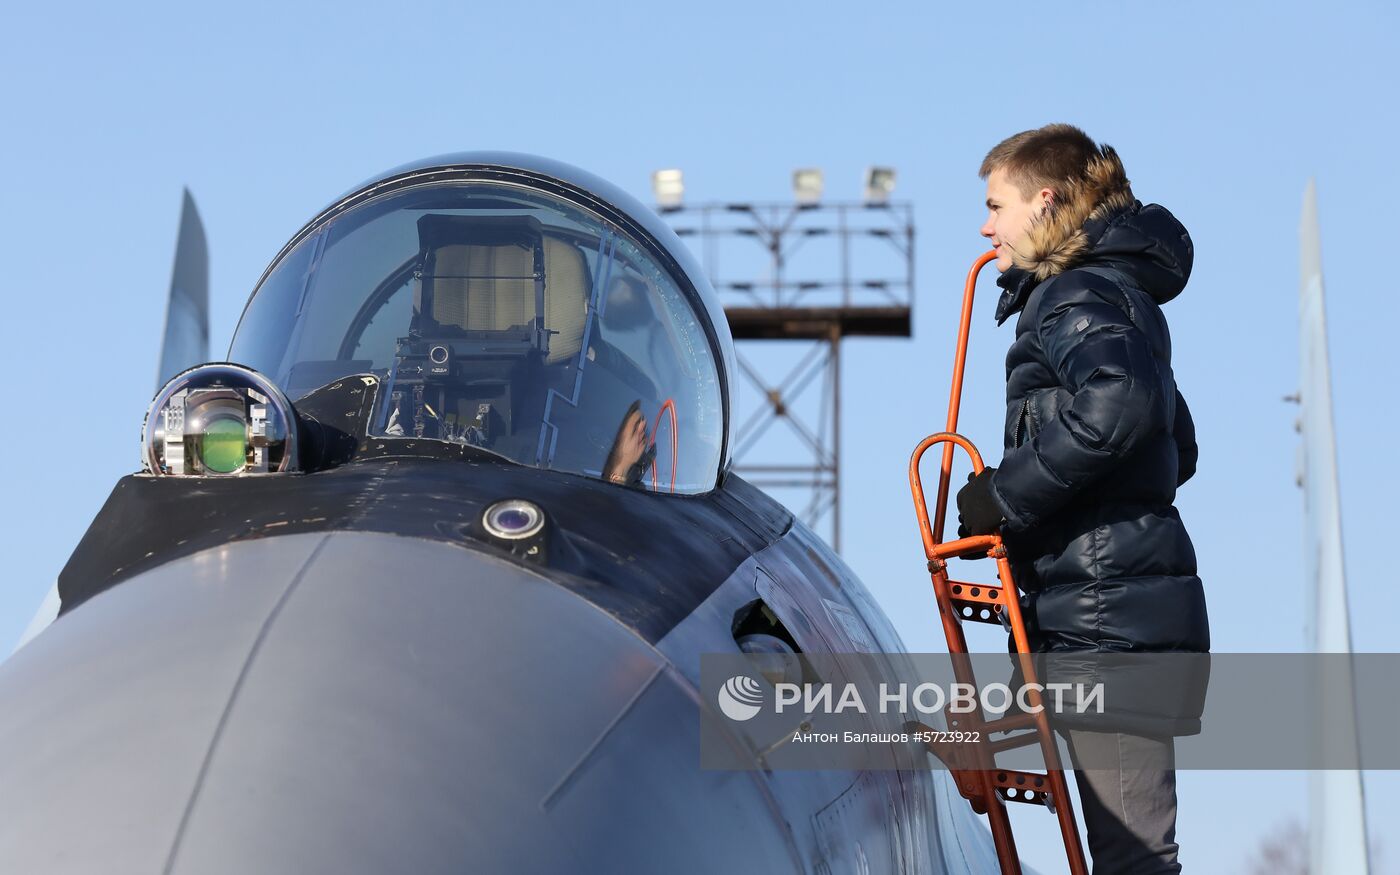 Выступление пилотажной группы "Соколы России" во Владивостоке